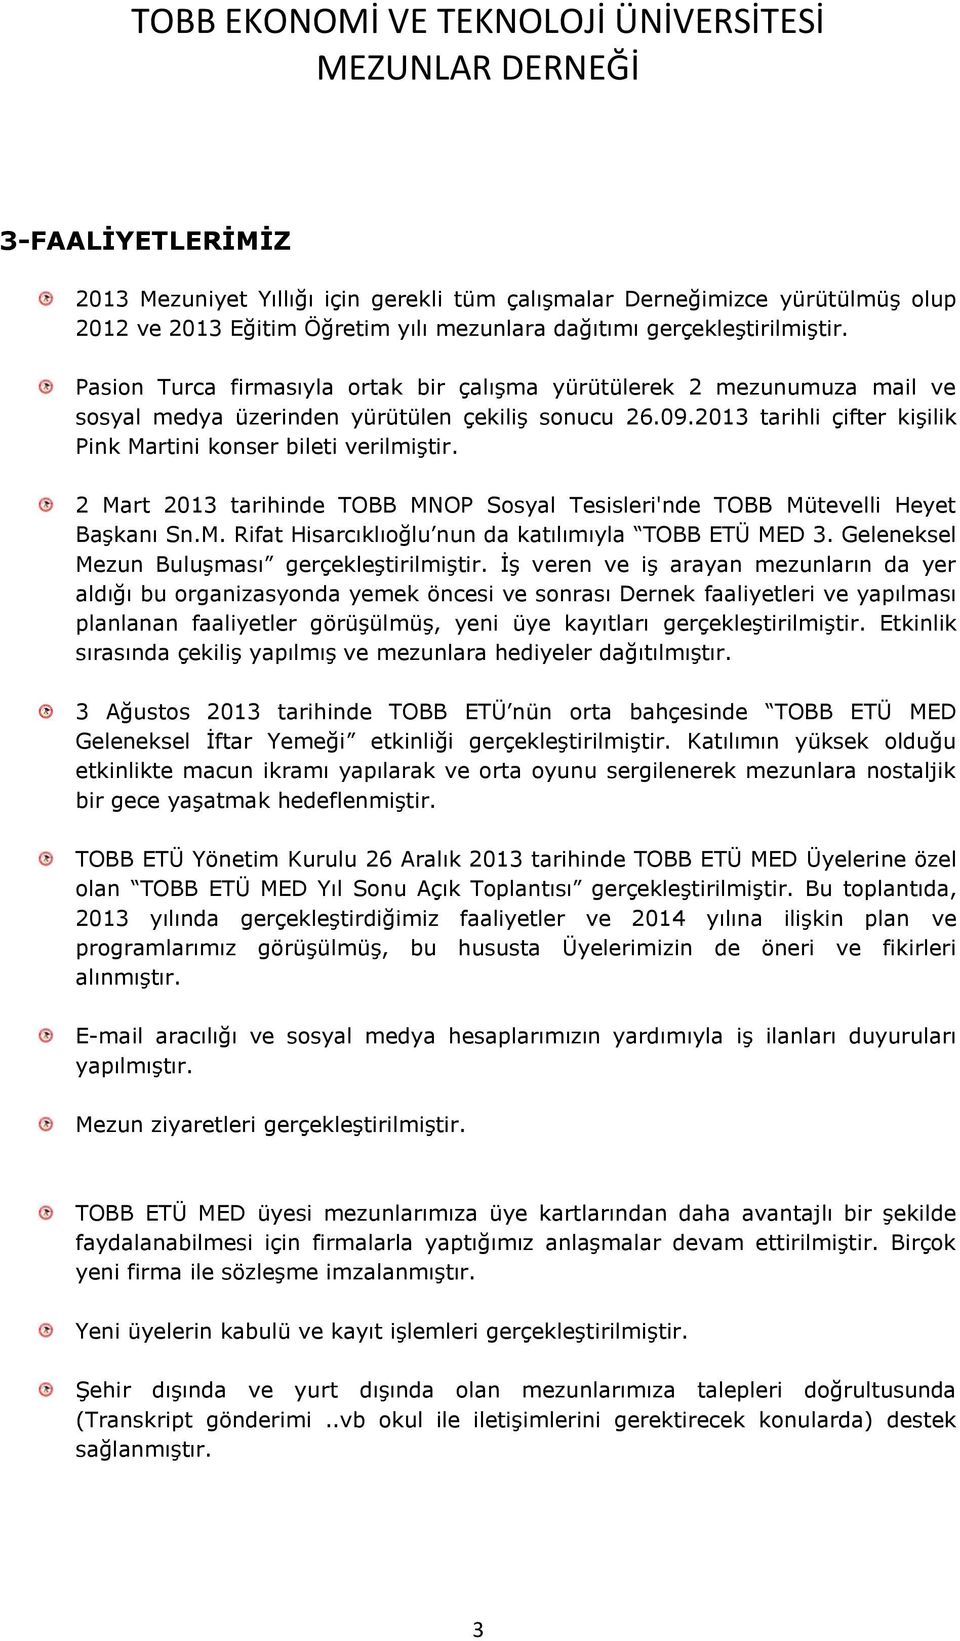 2 Mart 2013 tarihinde TOBB MNOP Sosyal Tesisleri'nde TOBB Mütevelli Heyet Başkanı Sn.M. Rifat Hisarcıklıoğlu nun da katılımıyla TOBB ETÜ MED 3. Geleneksel Mezun Buluşması gerçekleştirilmiştir.